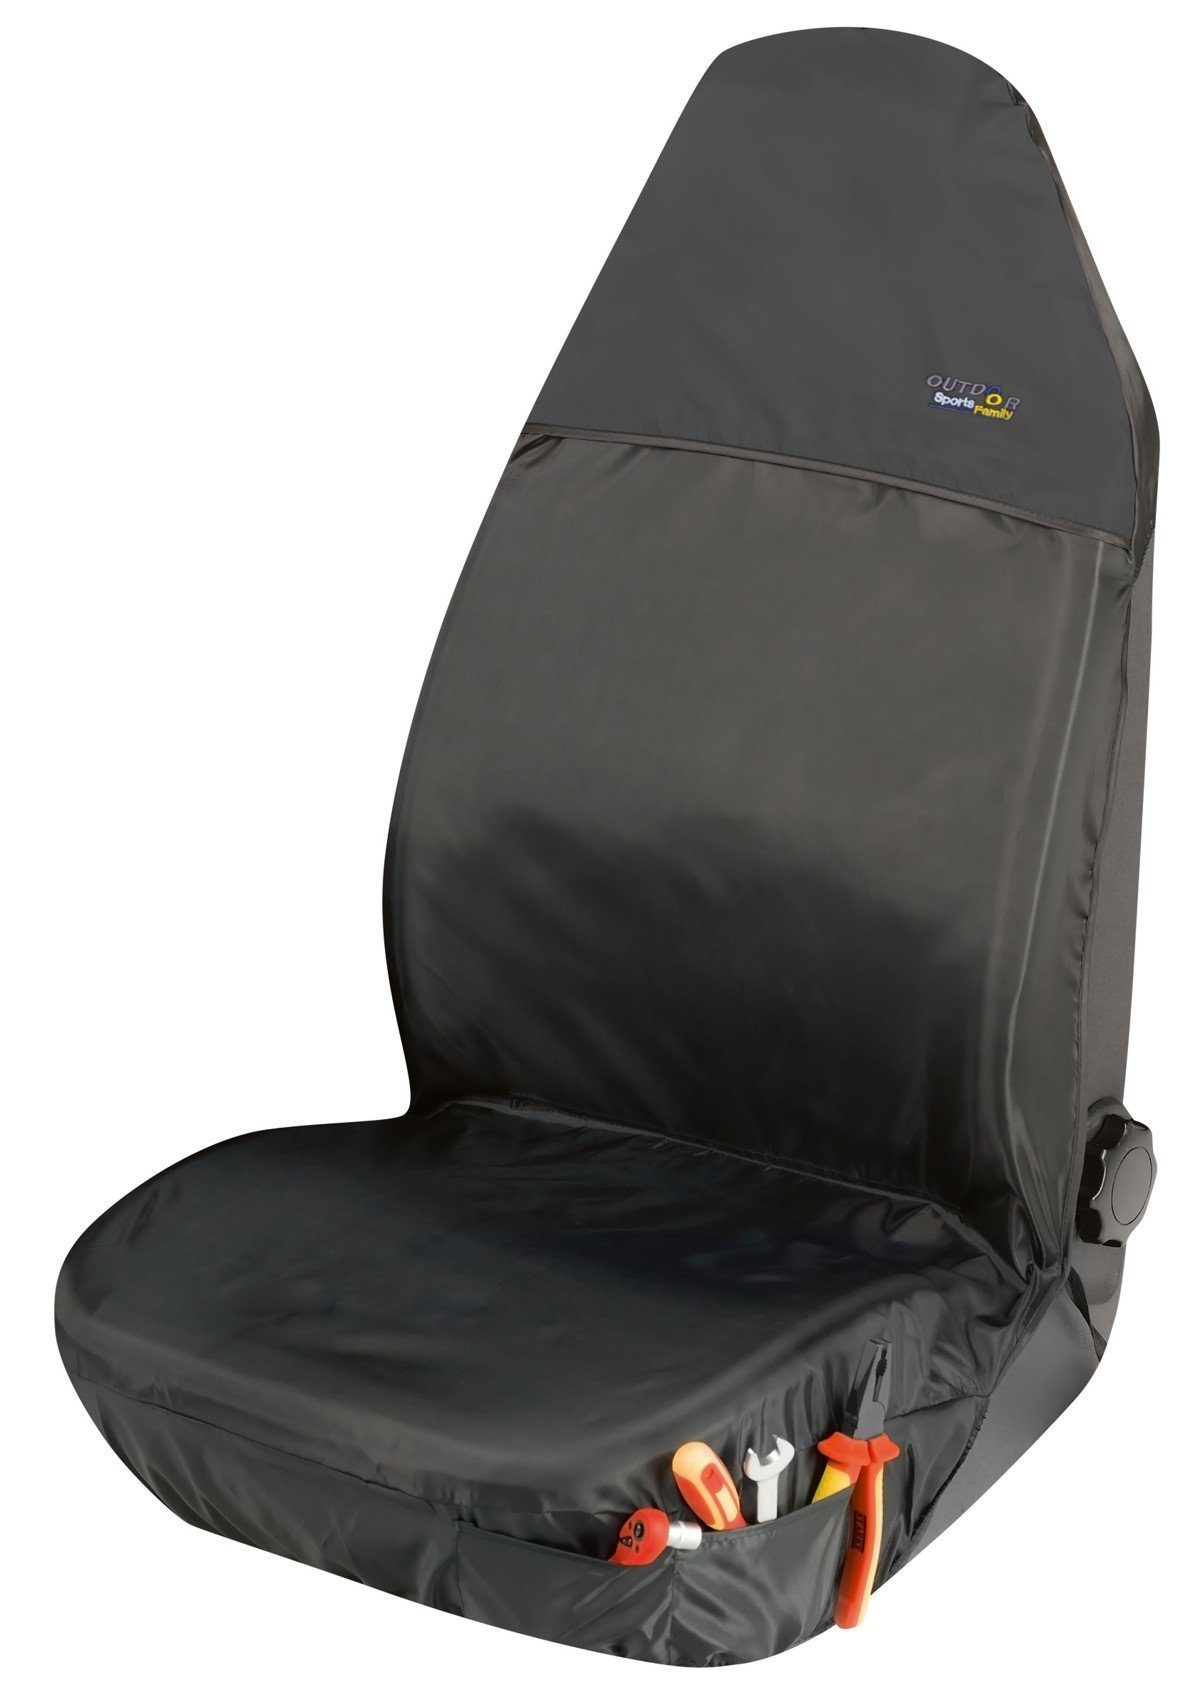 WALSER Autositzbezug Auto Schonbezug Outdoor Sports schwarz wasser- und  schmutzabweisend